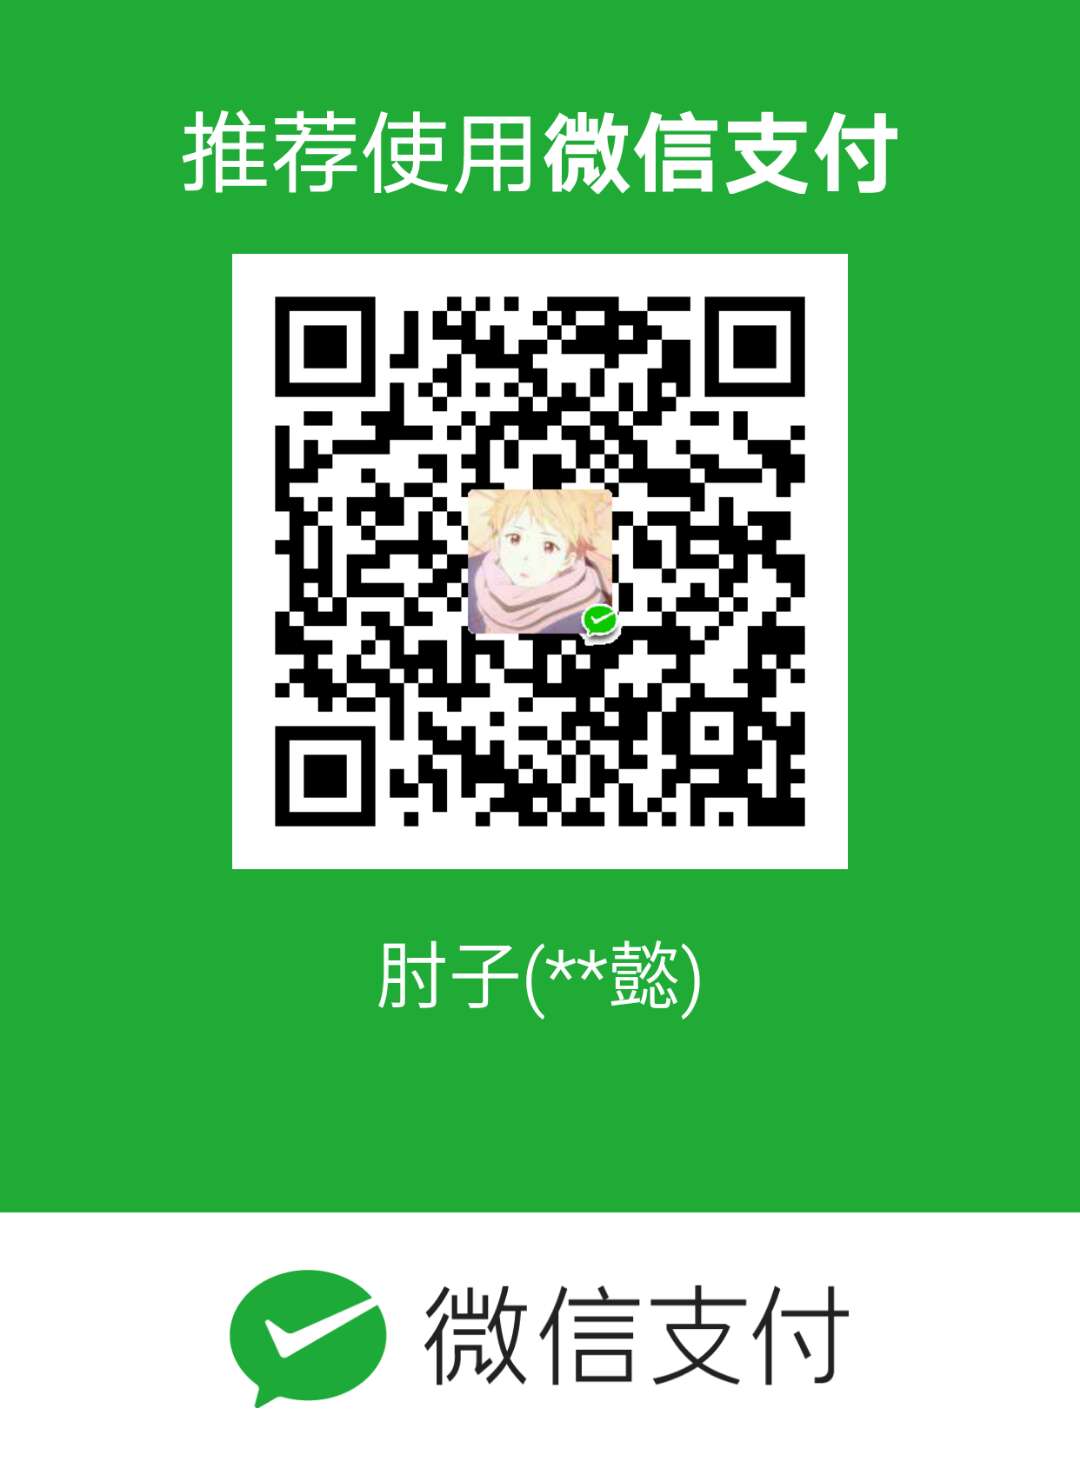 Zia Zhou WeChat Pay